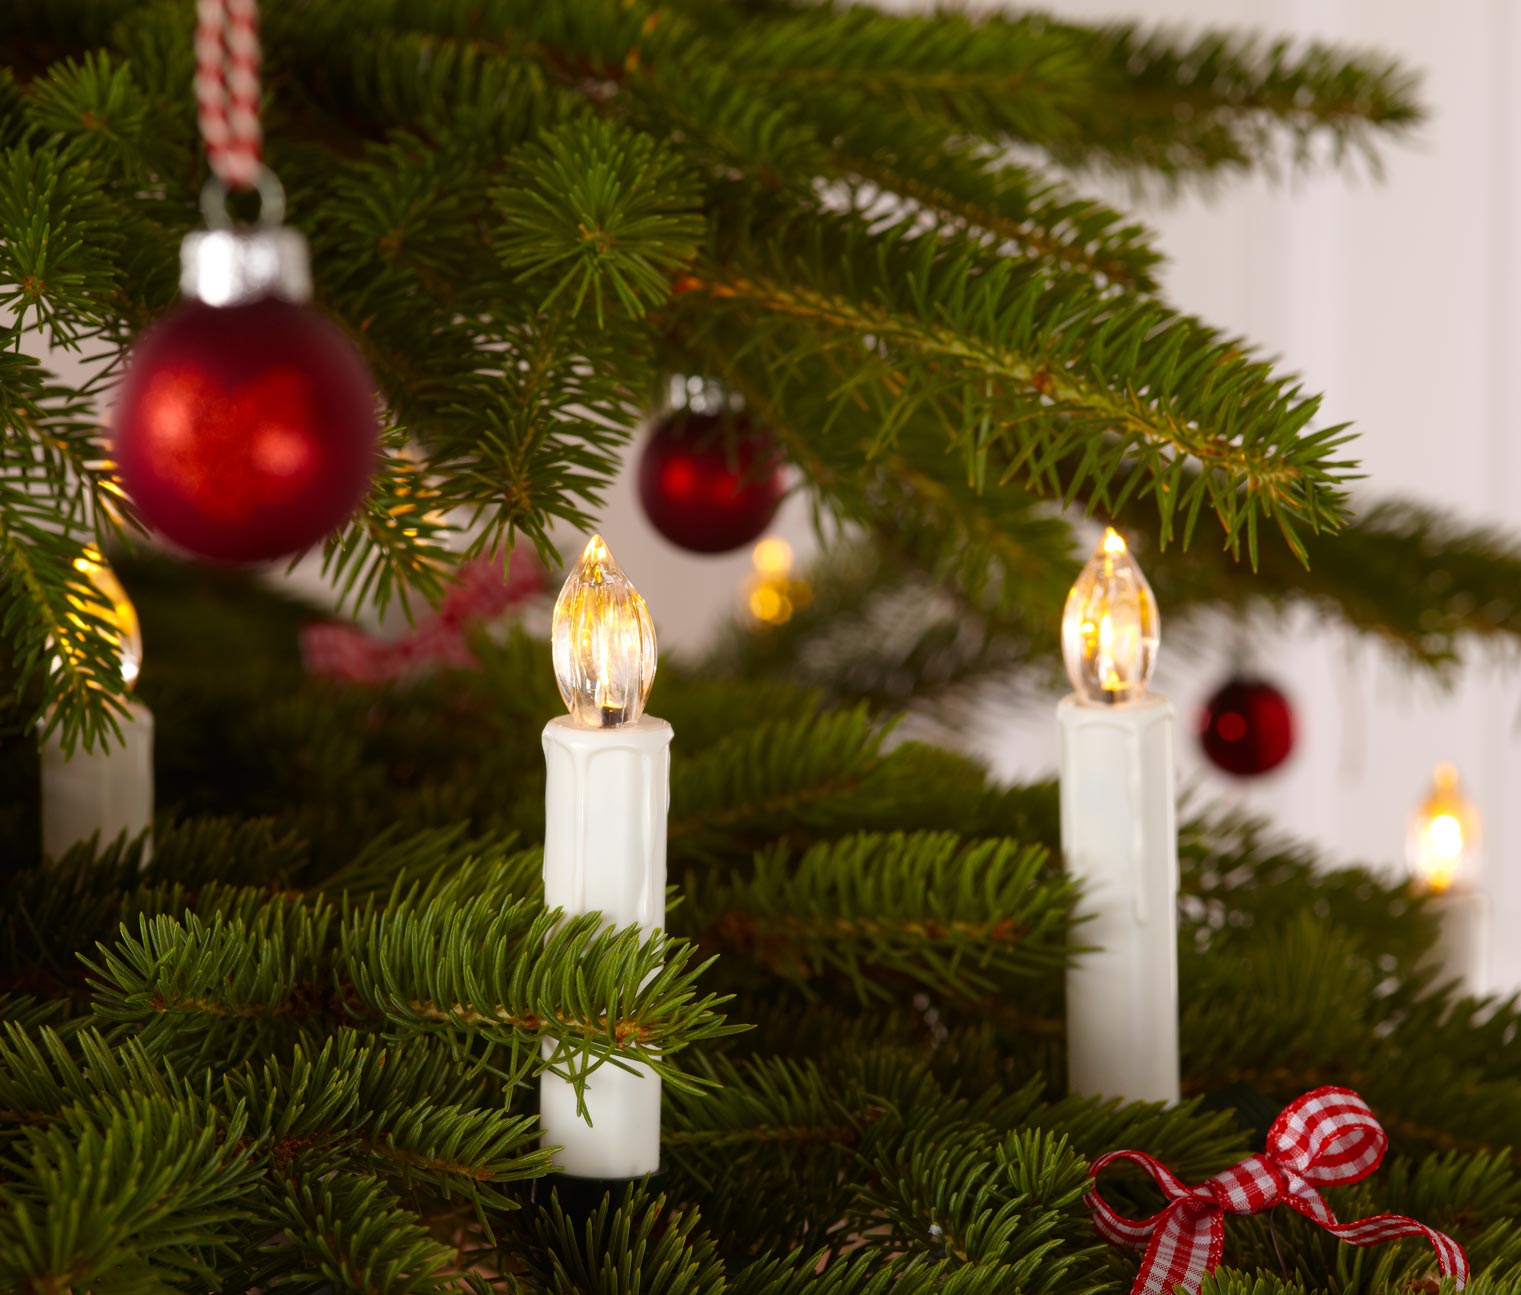 10 db LED-es karácsonyfa gyertya szettben 297235 a Tchibo-nál.